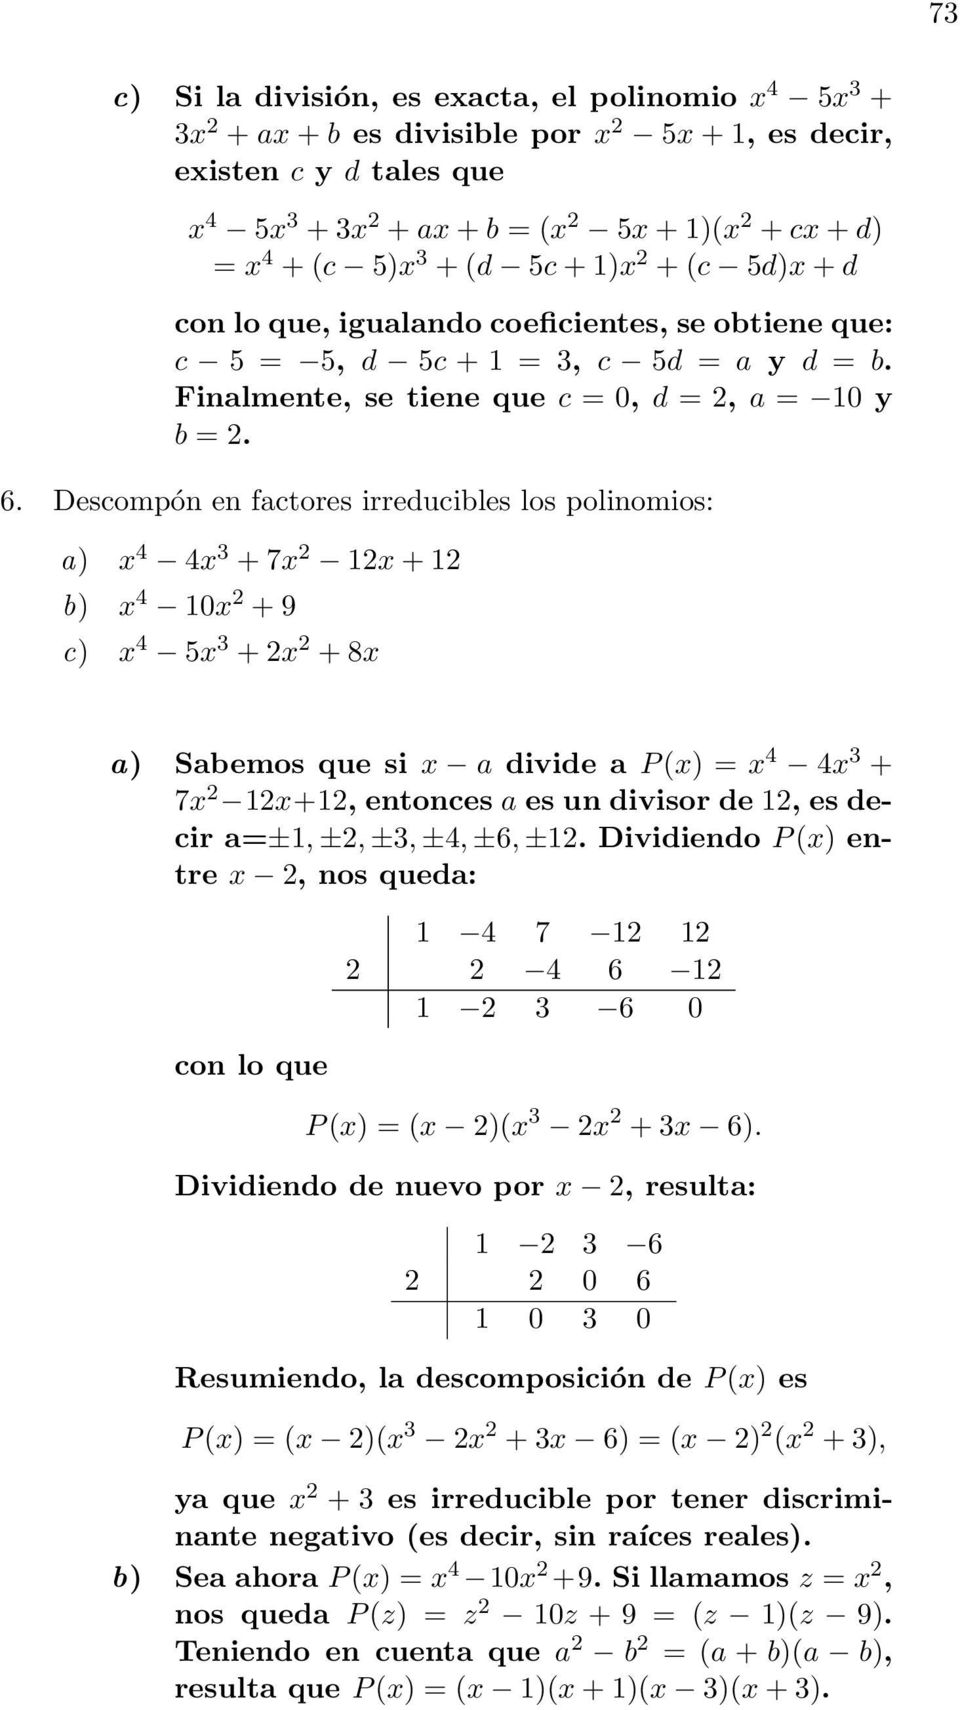 Descompón en factores irreducibles los polinomios: 4 4 3 + 7 2 122 4 10 2 + 9 c) 4 5 3 + 2 2 + 8 Sabemos que si a divide a P () 4 4 3 + 7 2 12+12, entonces a es un divisor de 12, es decir a±1, ±2,